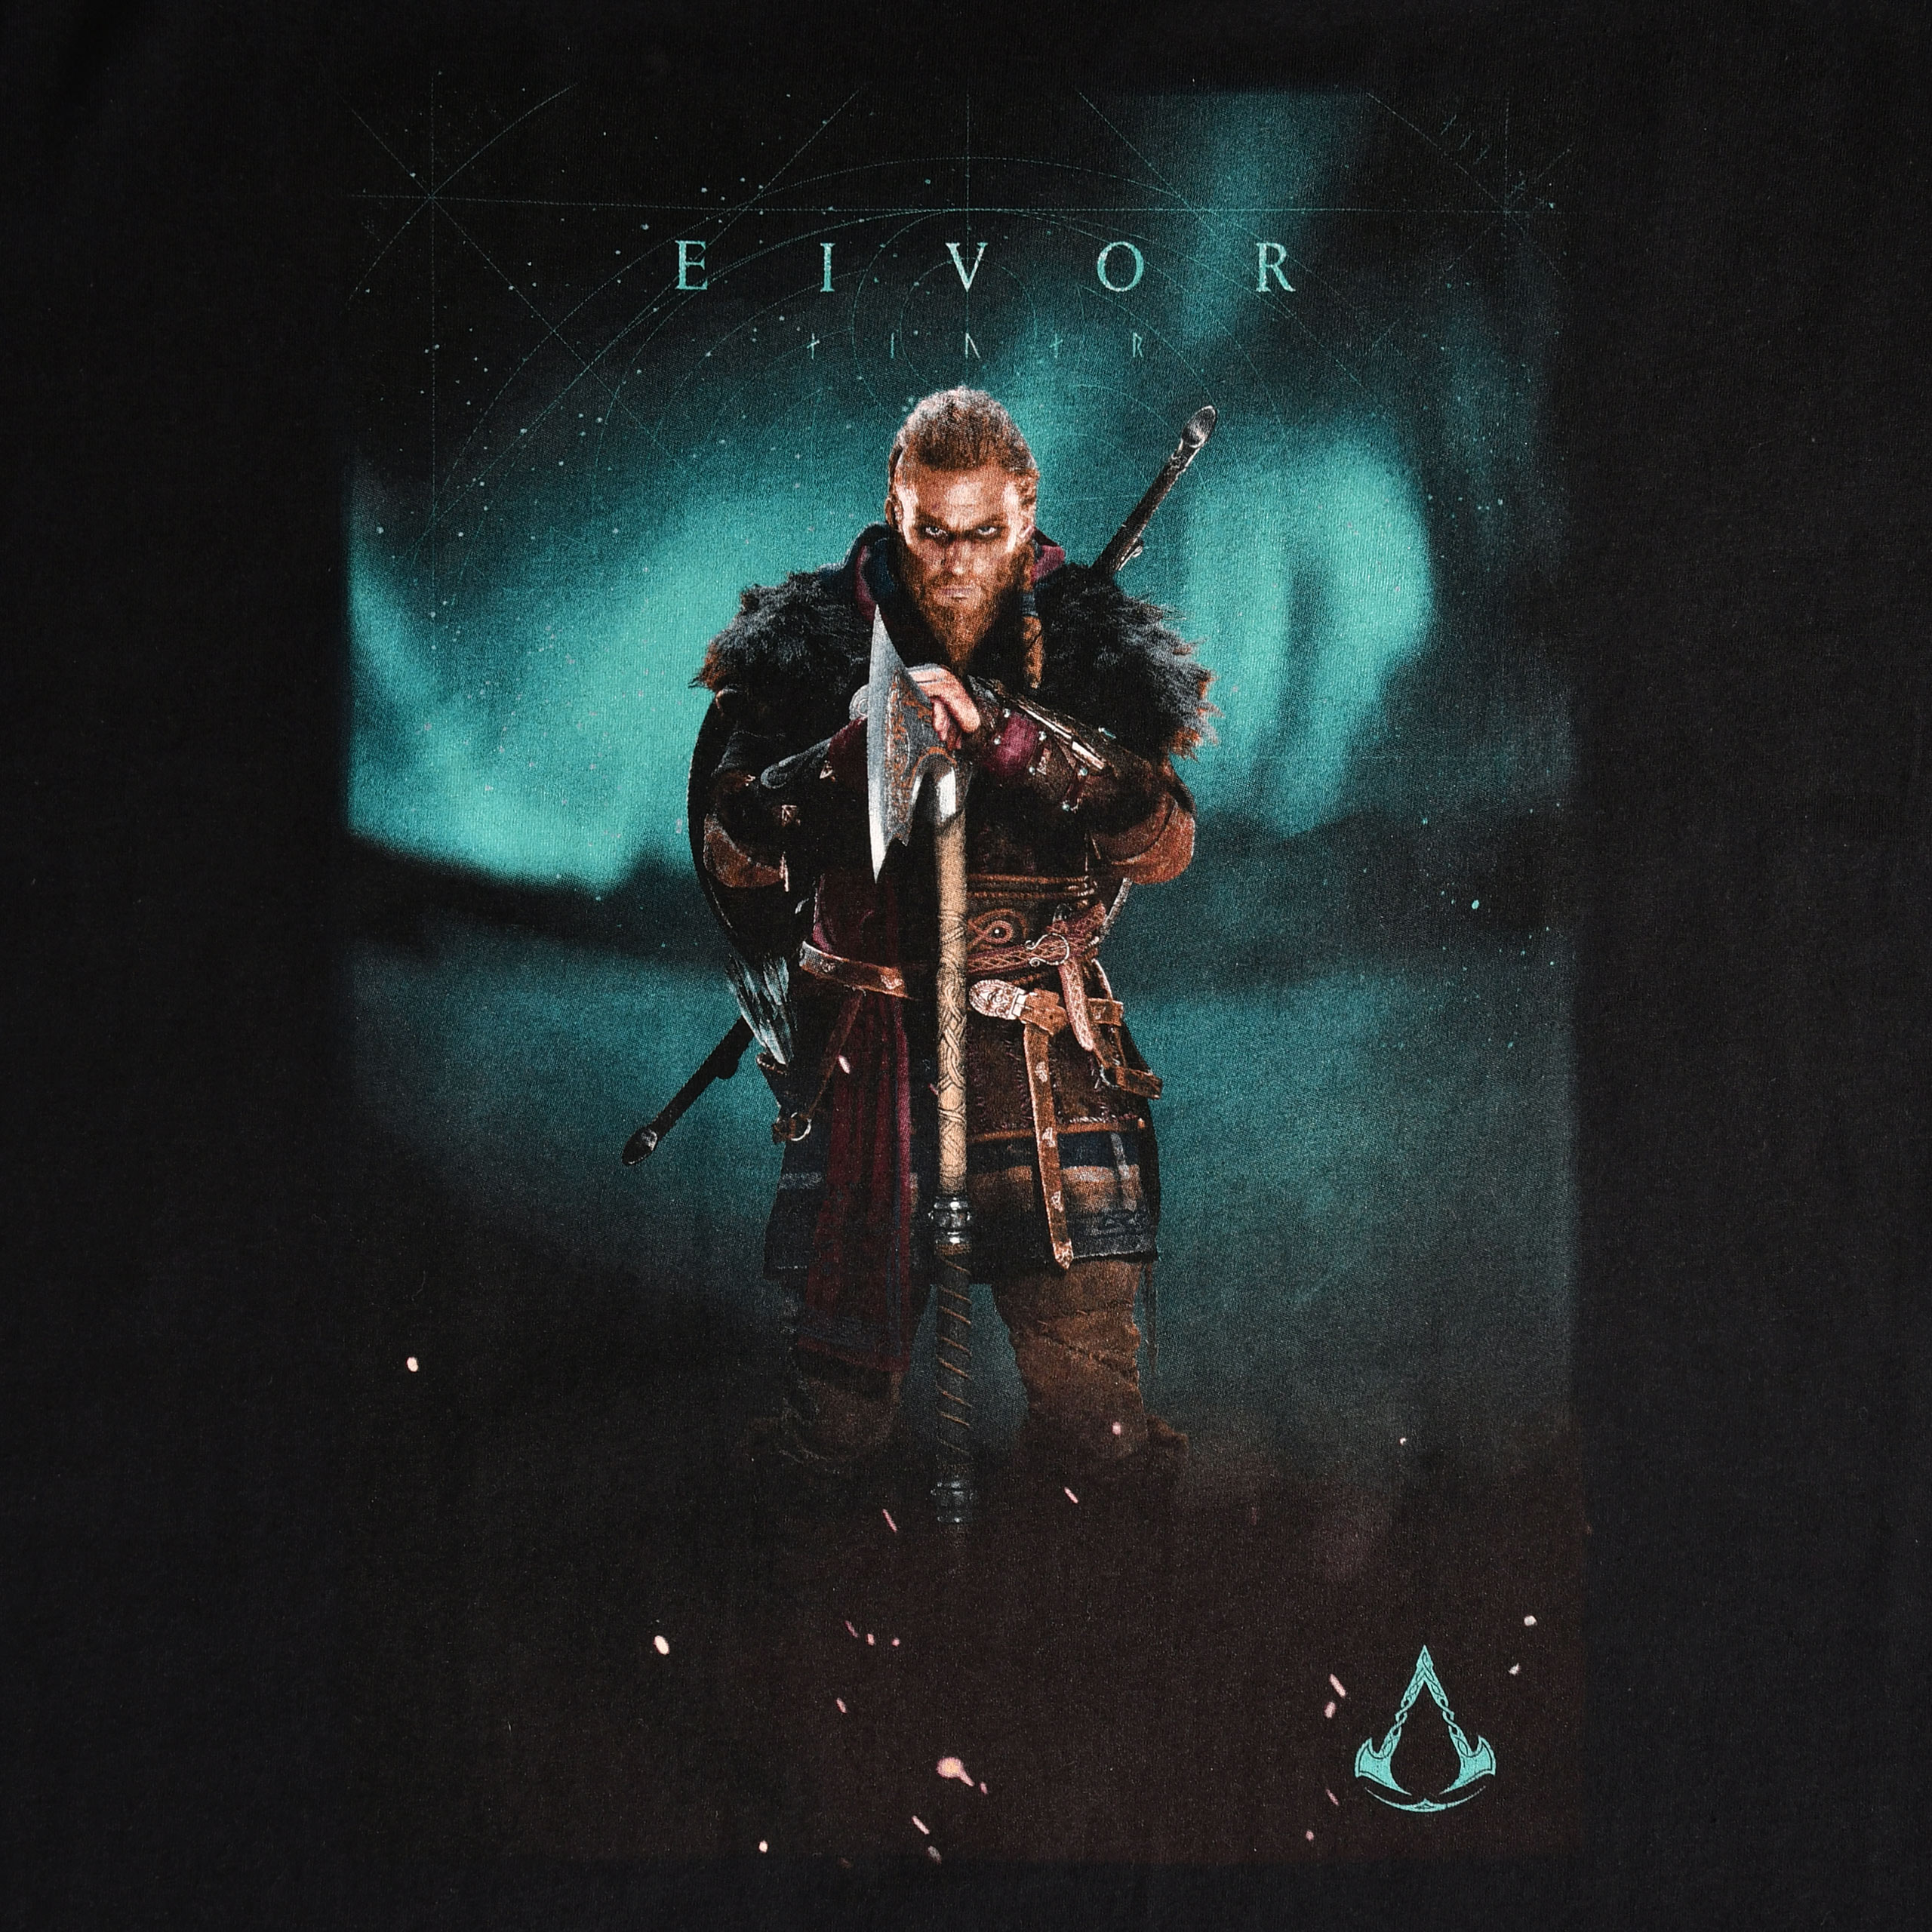 Assassin's Creed - Eivor Valhalla T-Shirt schwarz